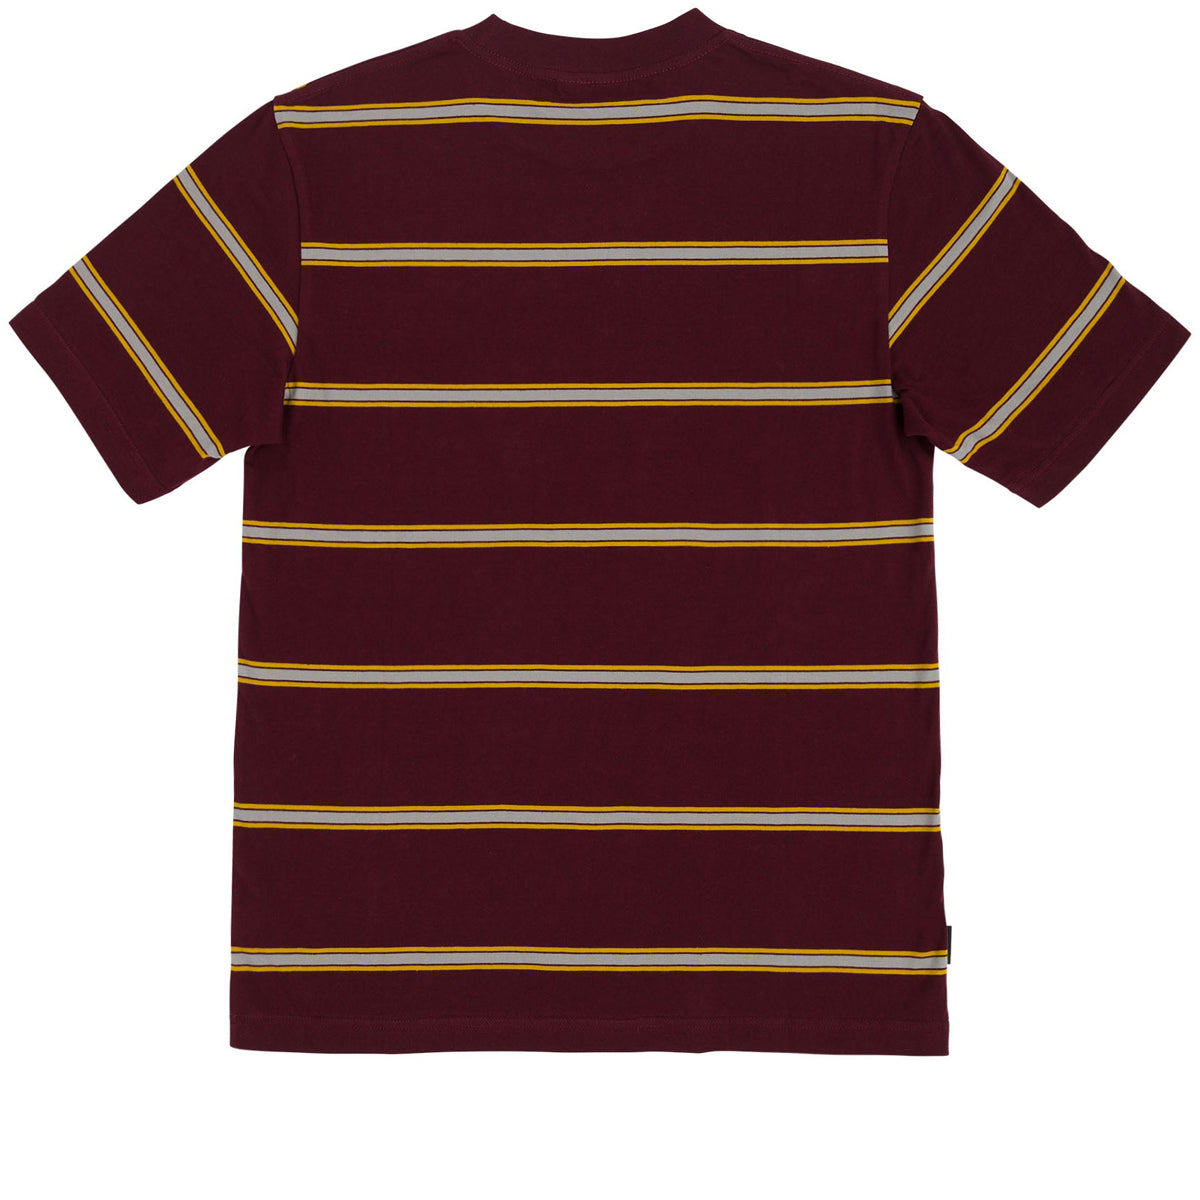 Santa Cruz Dawes Pocket T-Shirt - Maroon/Gold image 2